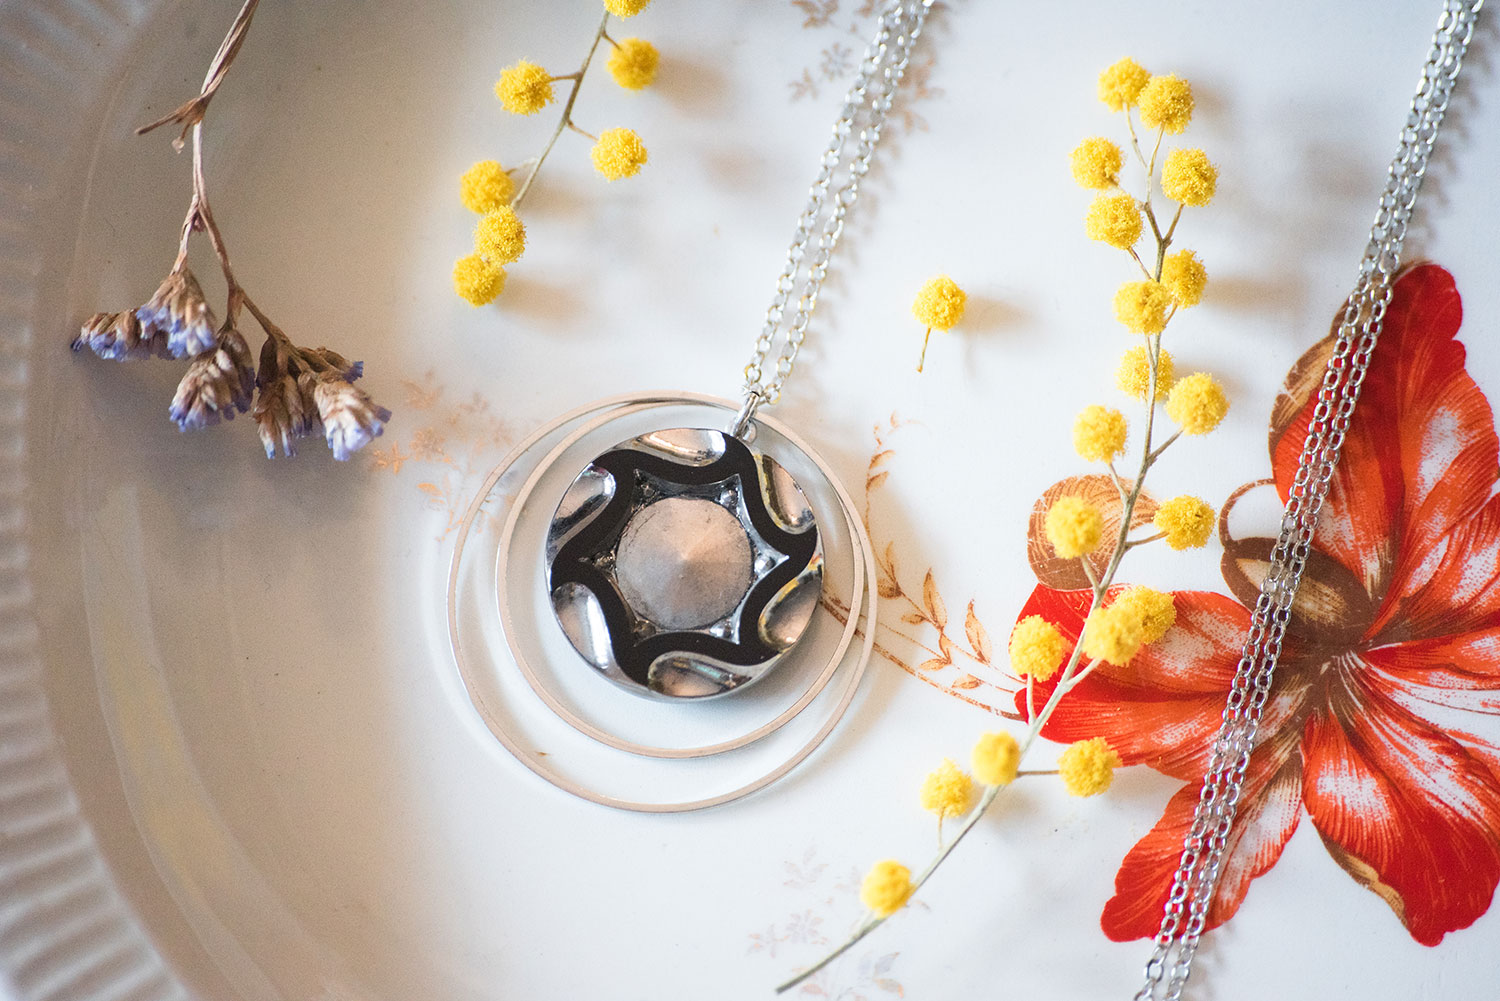 Assuna – Sautoir Lunare Marcelle argenté – bouton ancien 1920 – collier long d’inspiration vintage en forme de croissant de lune